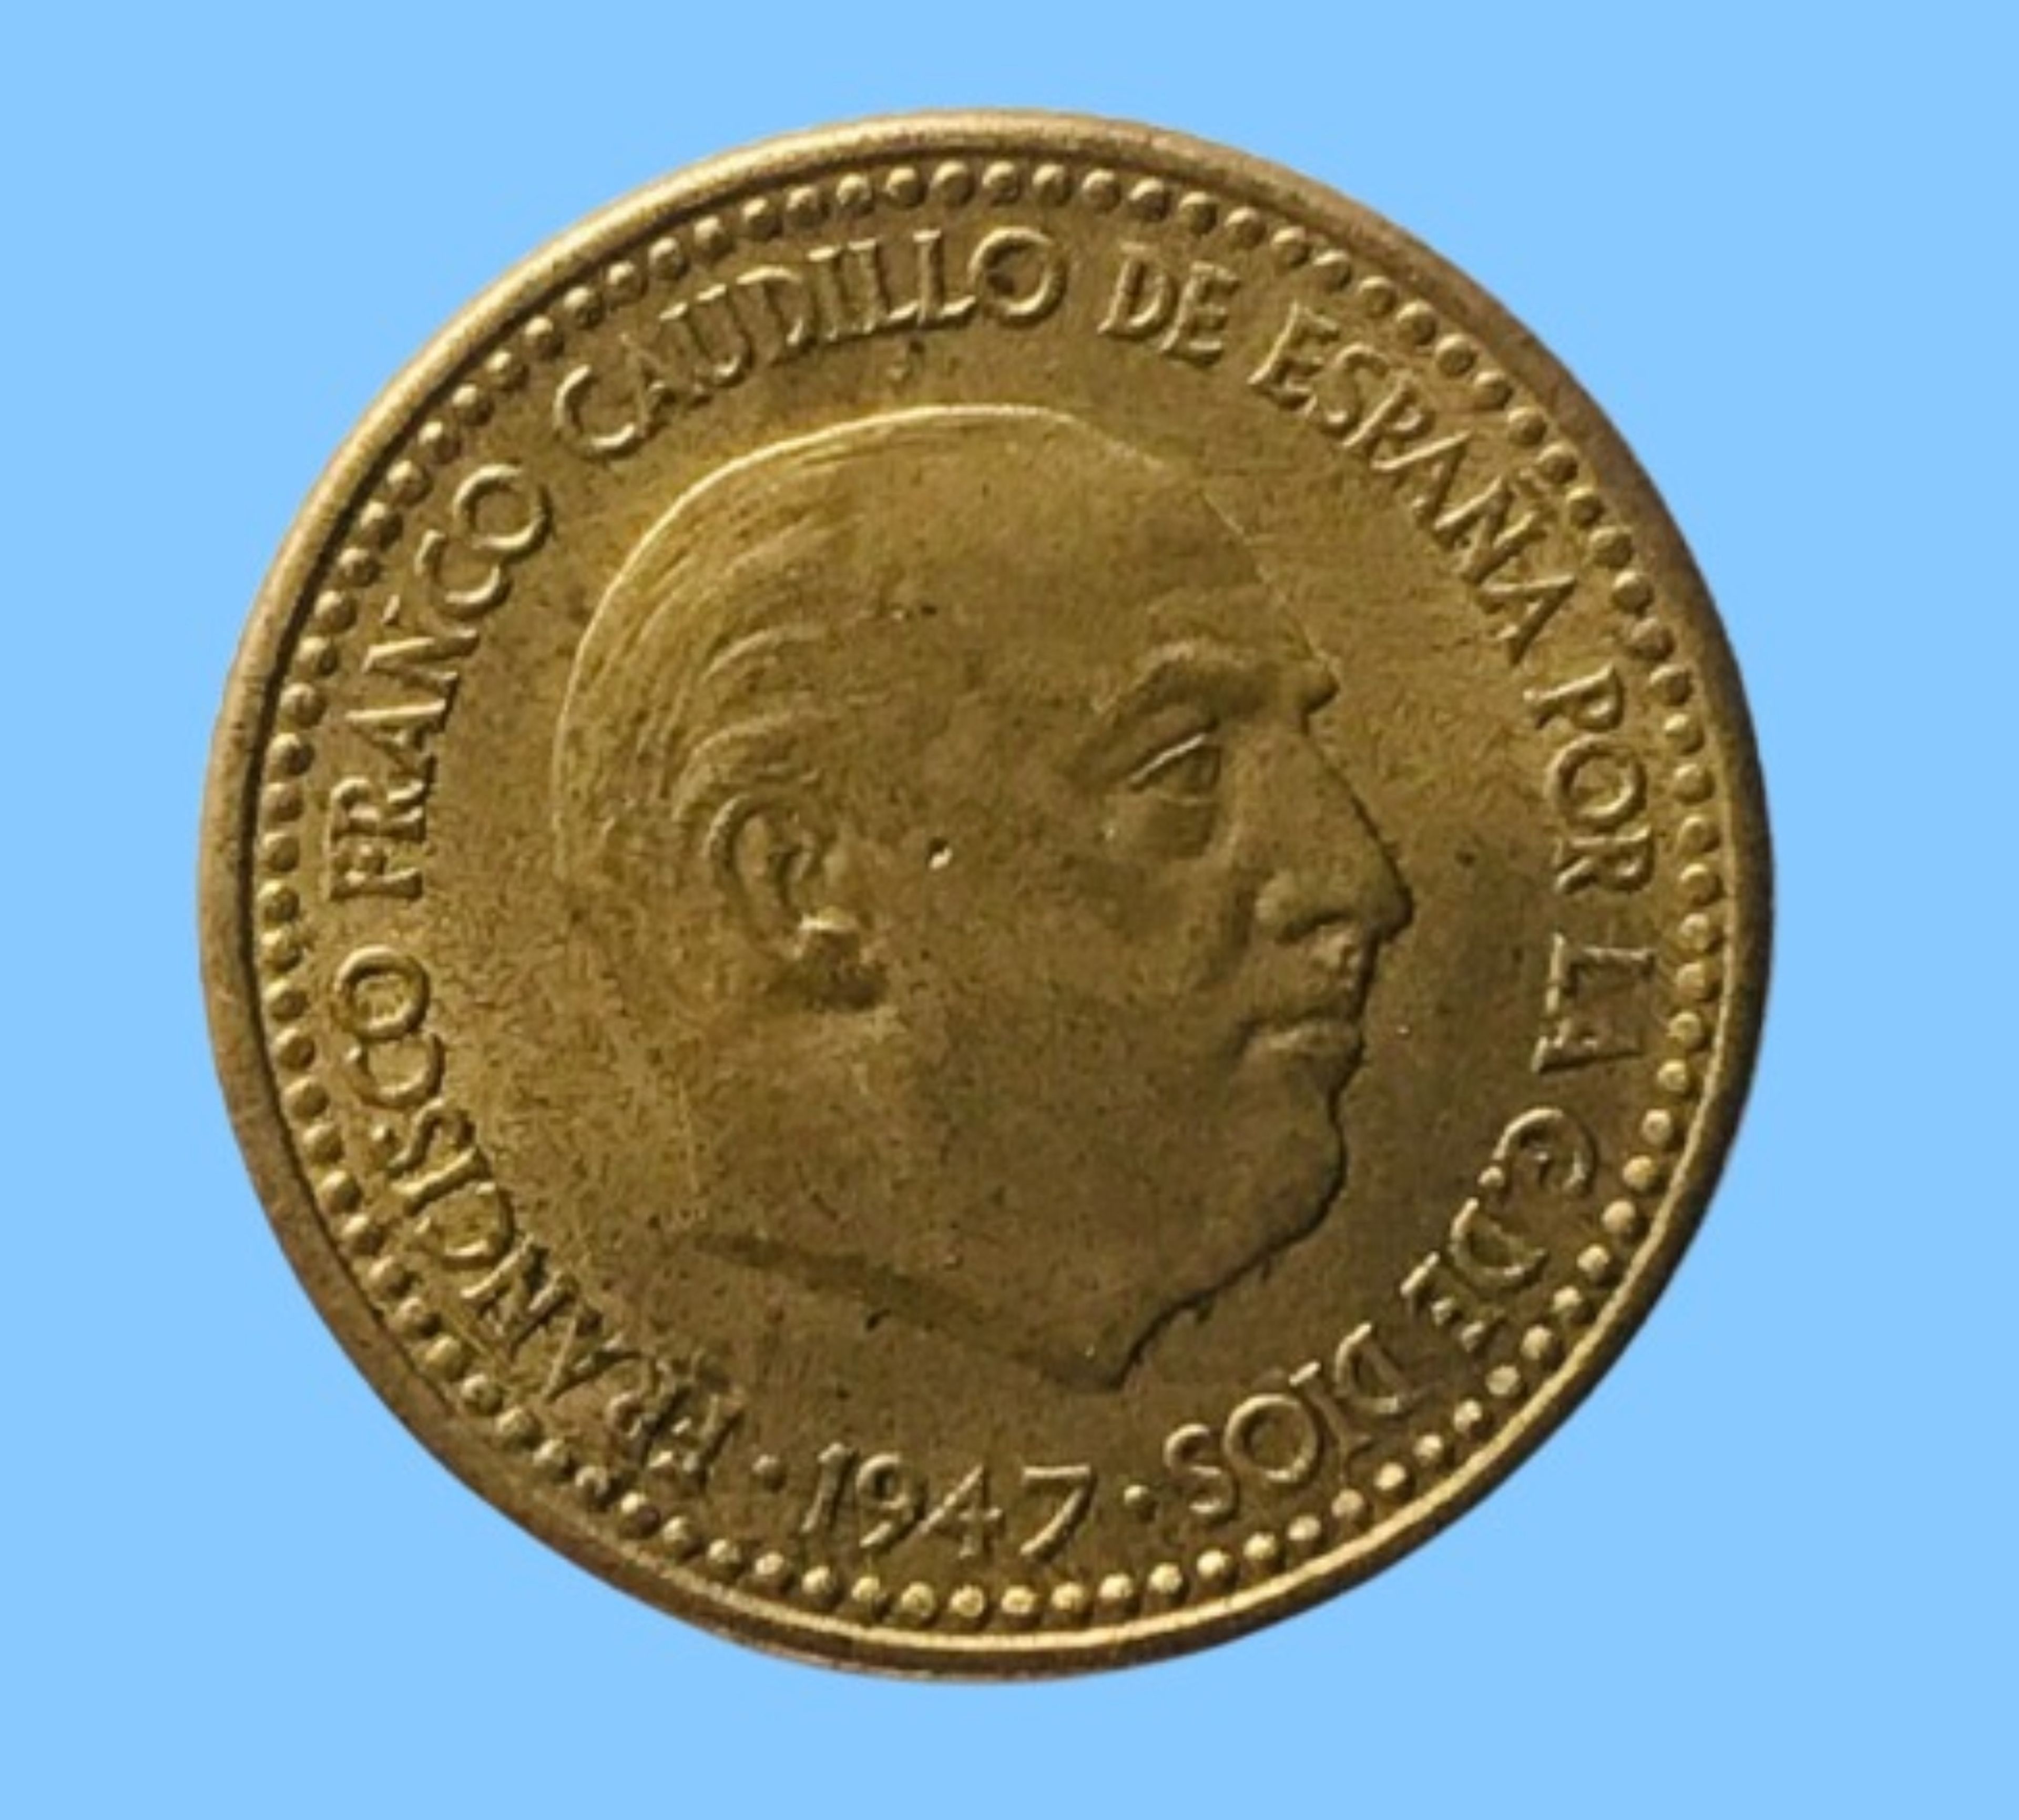 1 peseta de 1947